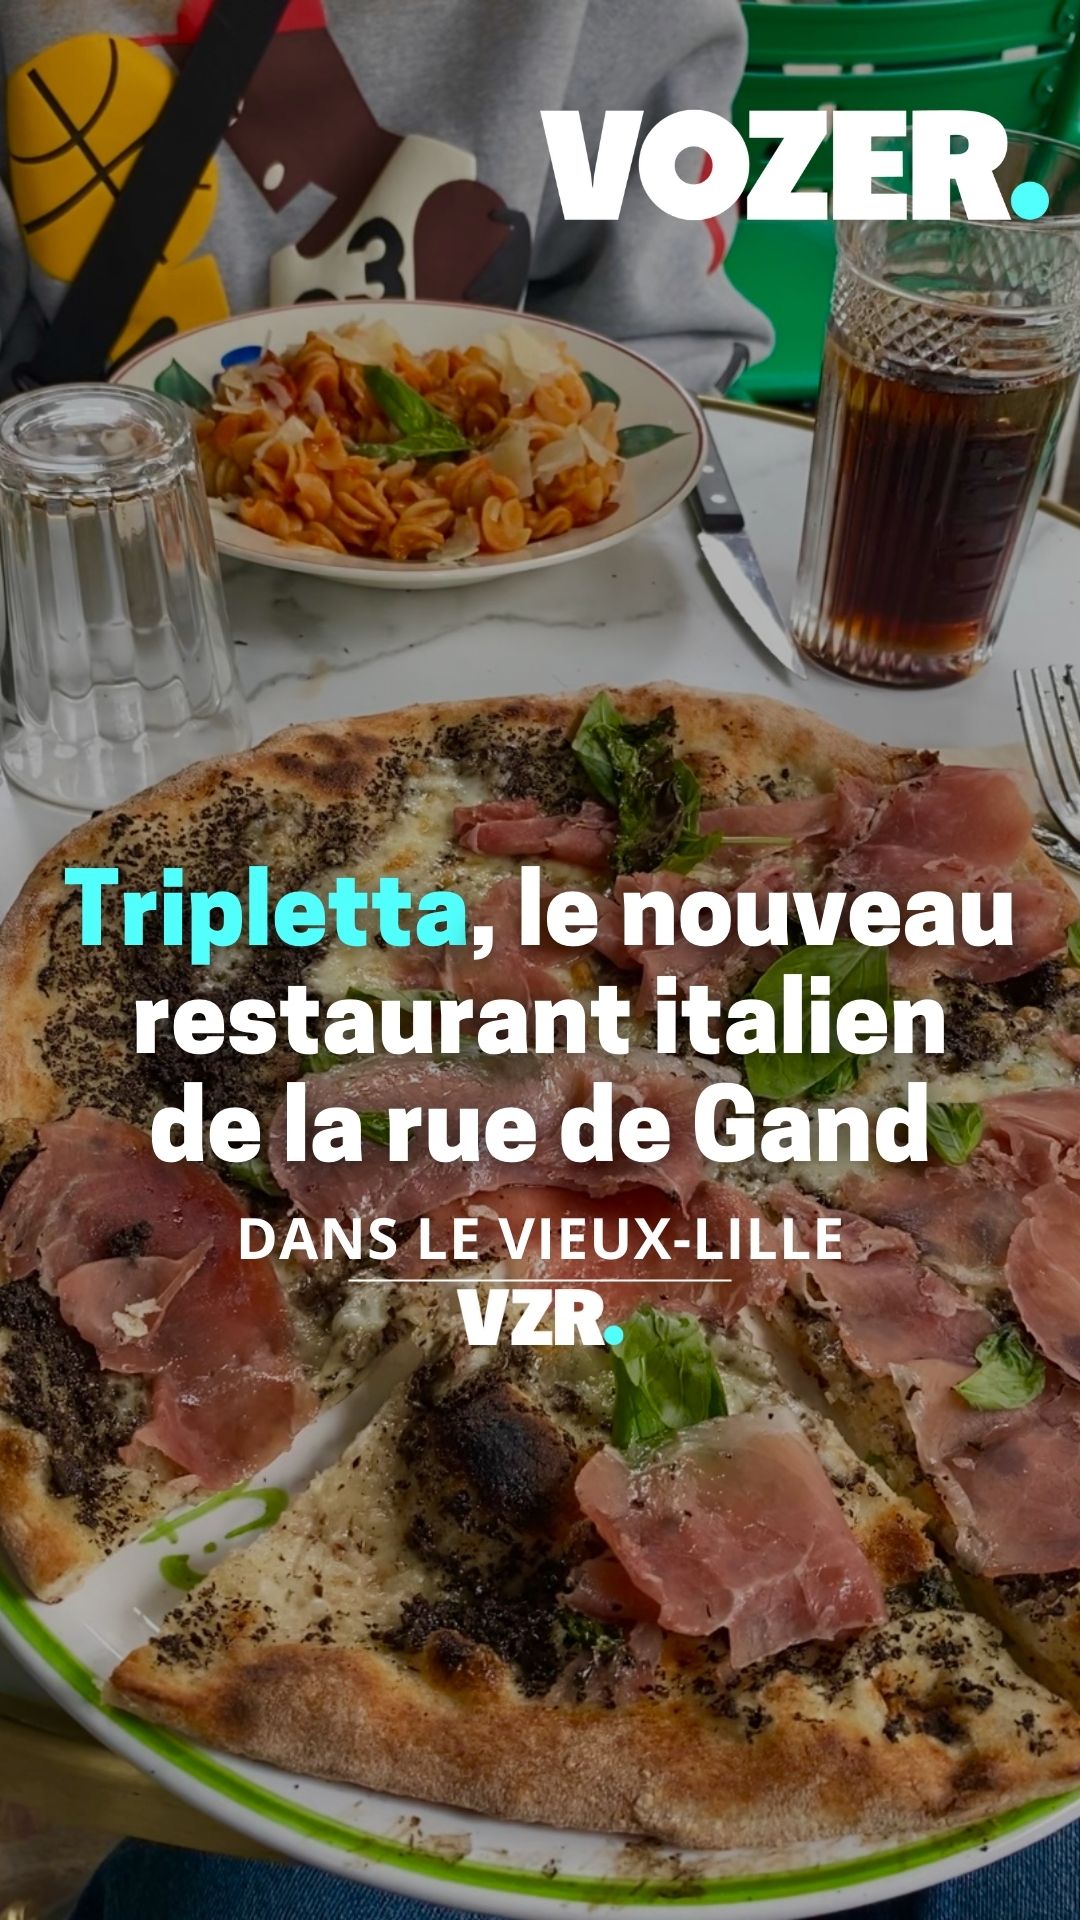 Tripletta, le nouveau restaurant italien de la rue de Gand 